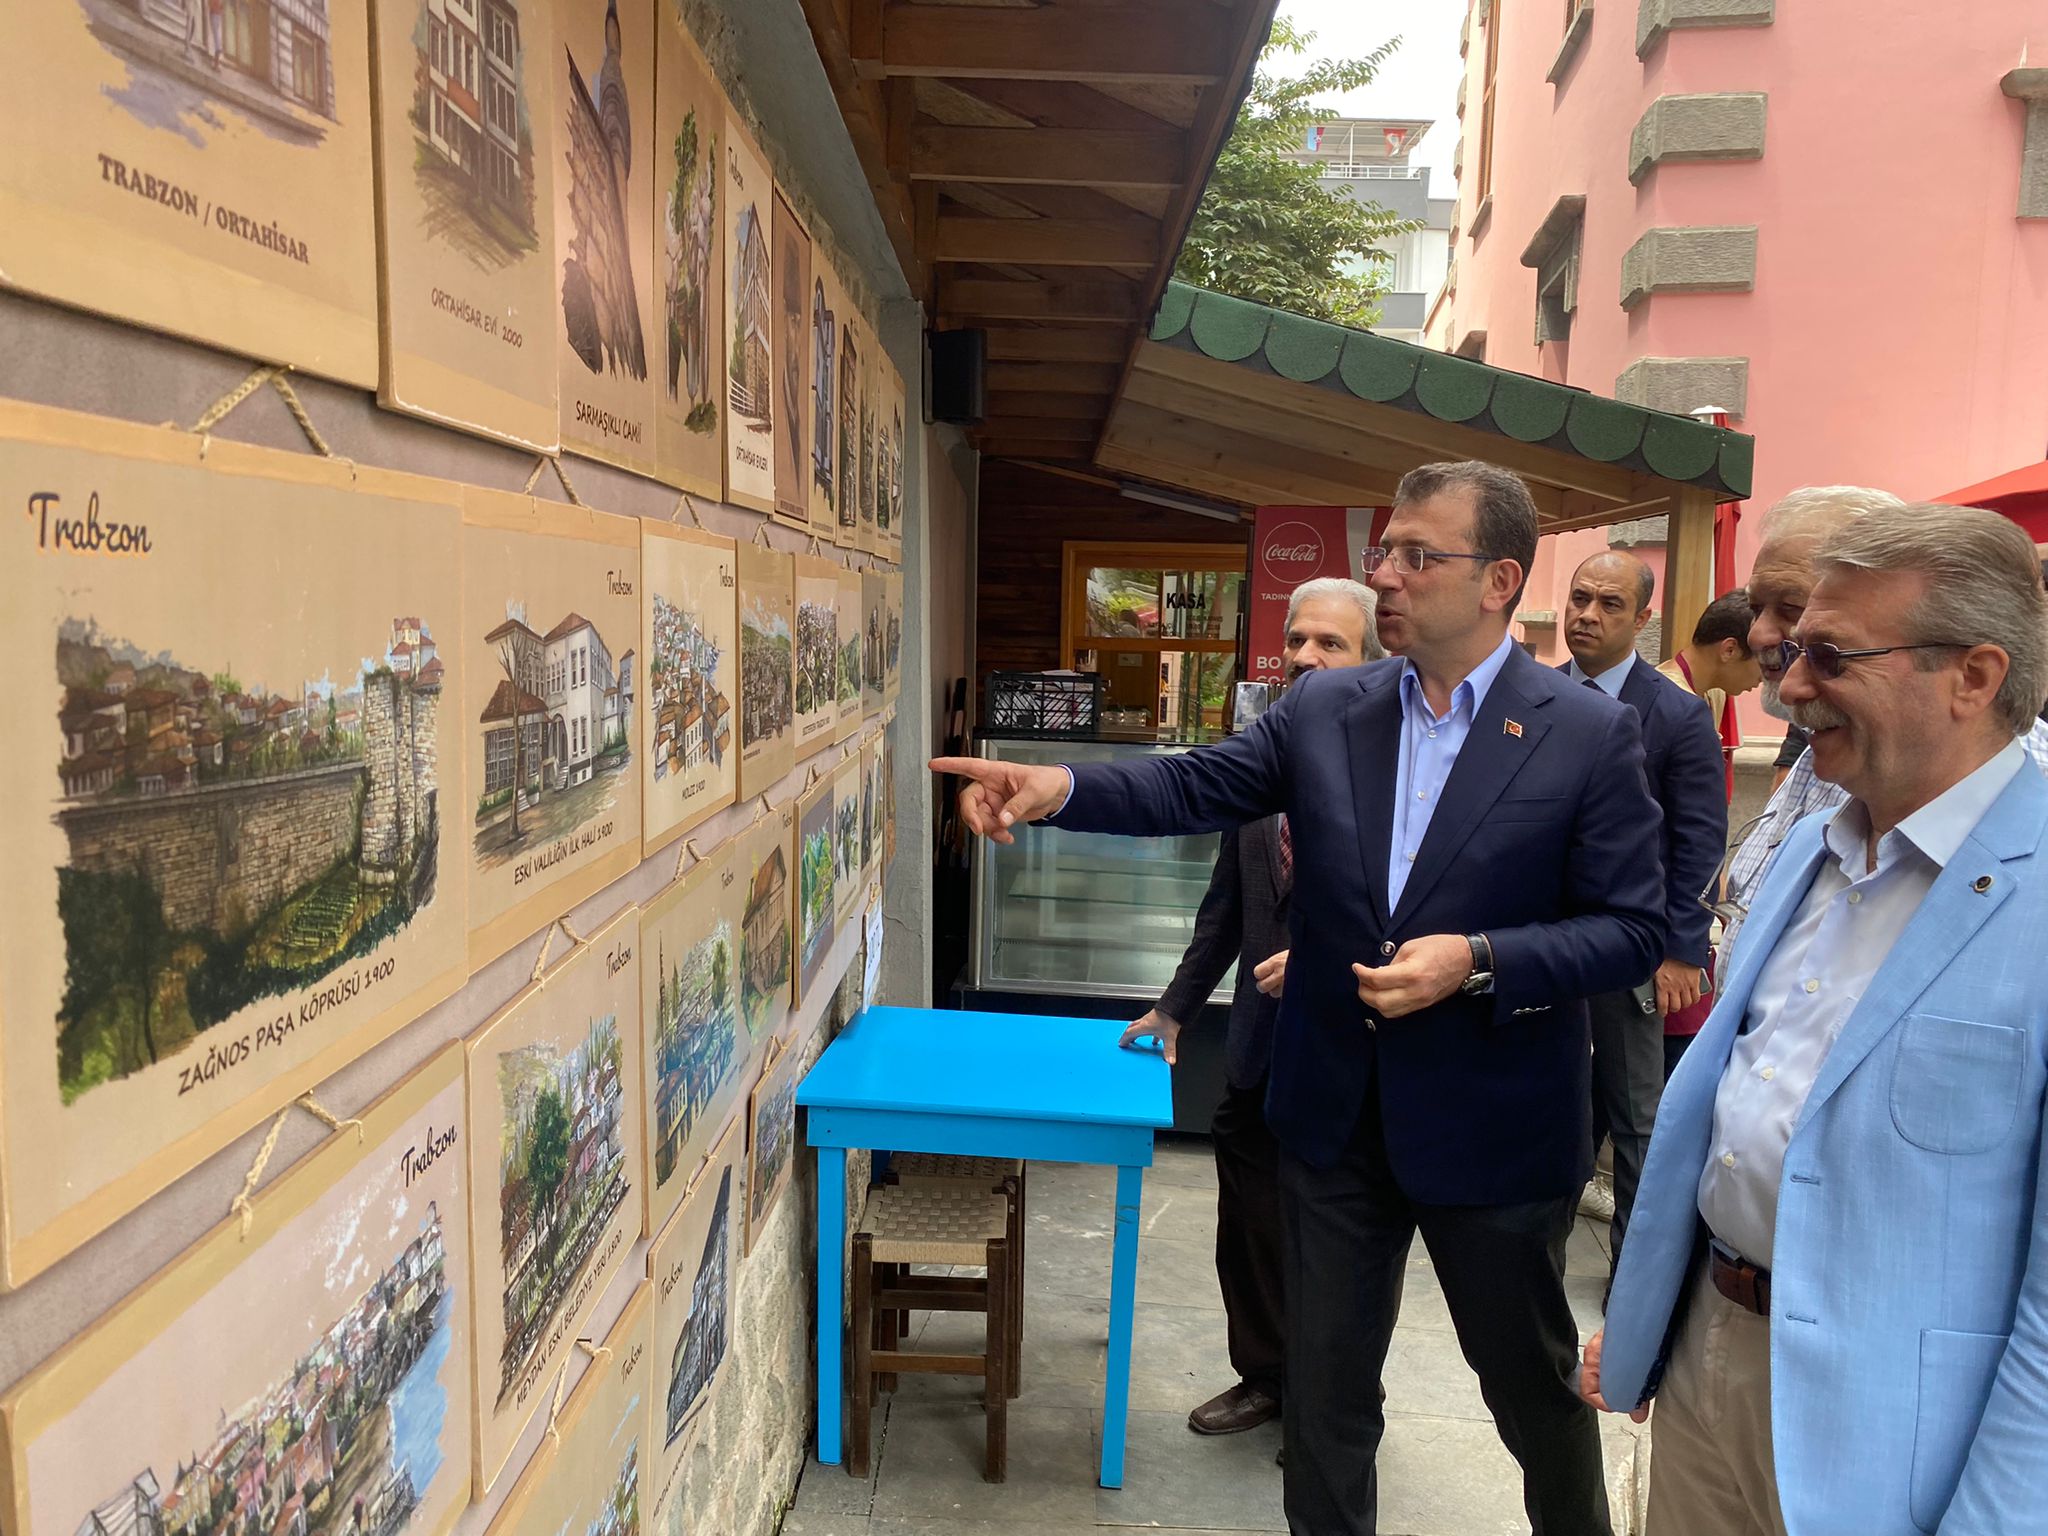 İBB Belediye Başkanı Ekrem İmamoğlu, eşi Dilek İmamoğlu’nun amcası Mehmet Kaya’nın cenazesi için geldiği memleketi Trabzon’da daha önceden söz verdiği bir ziyareti gerçekleştirdi.